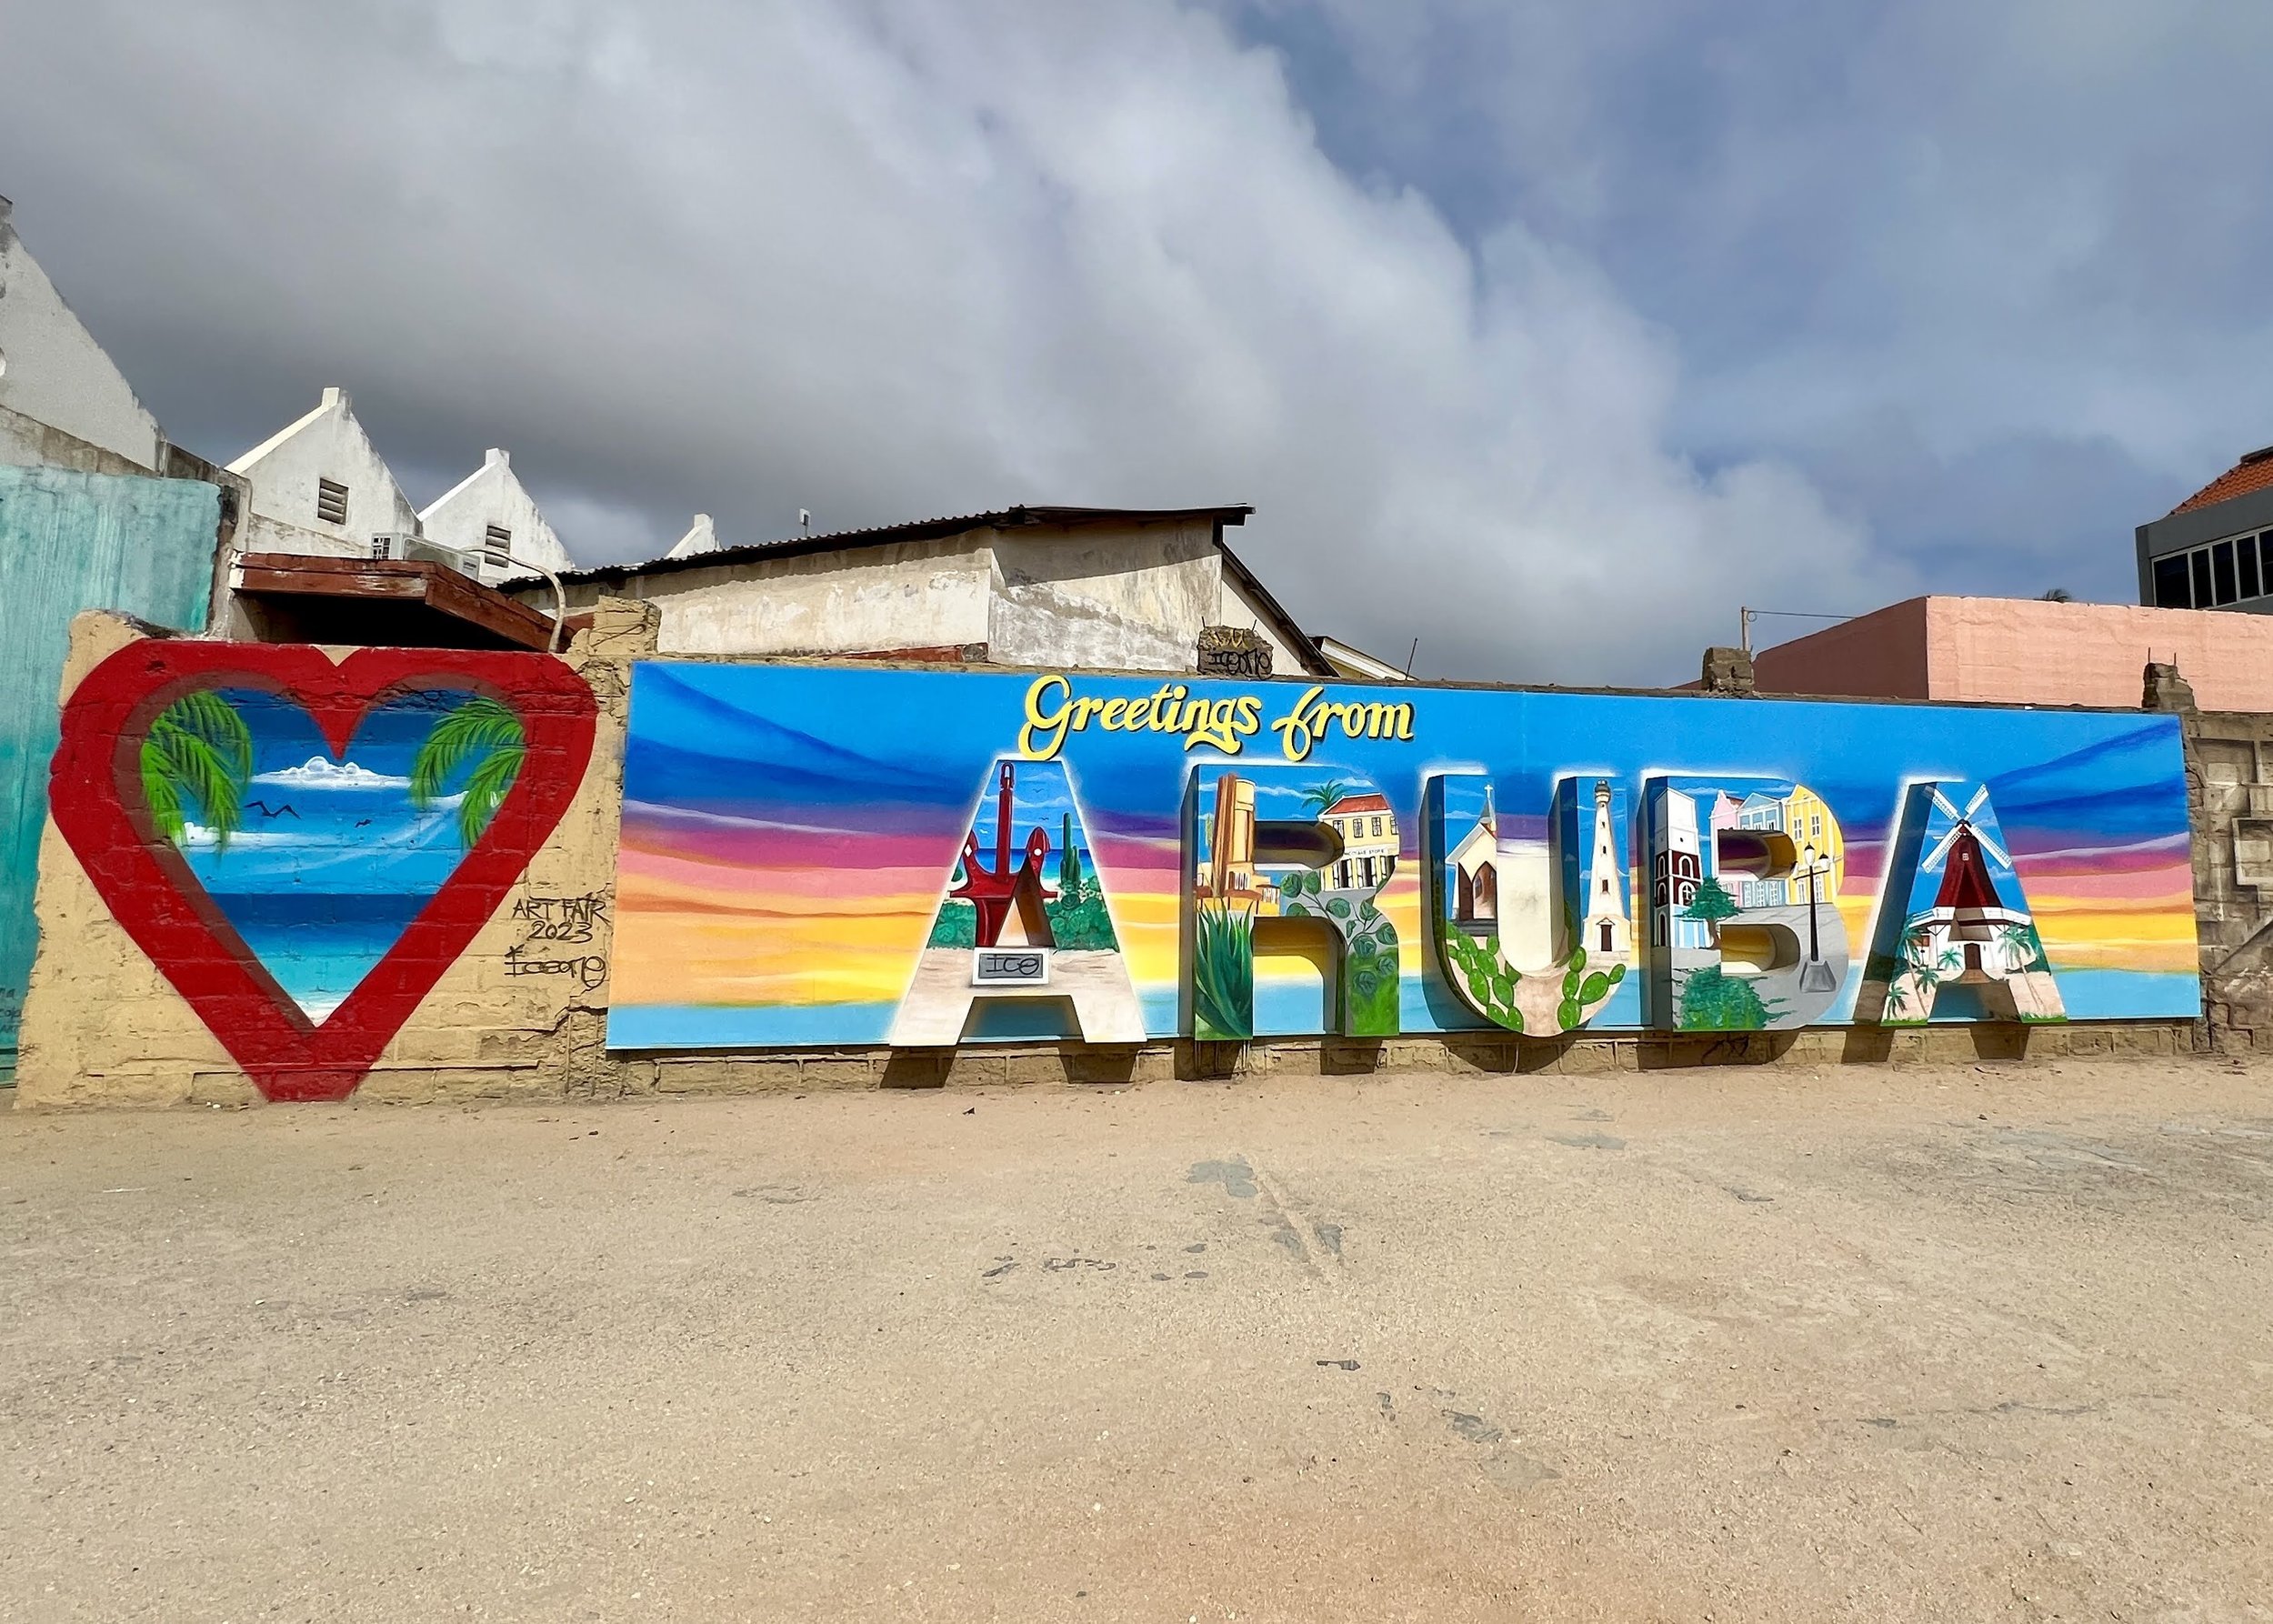 Greetings From Aruba mural in San Nicolas CREDIT Jennifer Bain.JPG